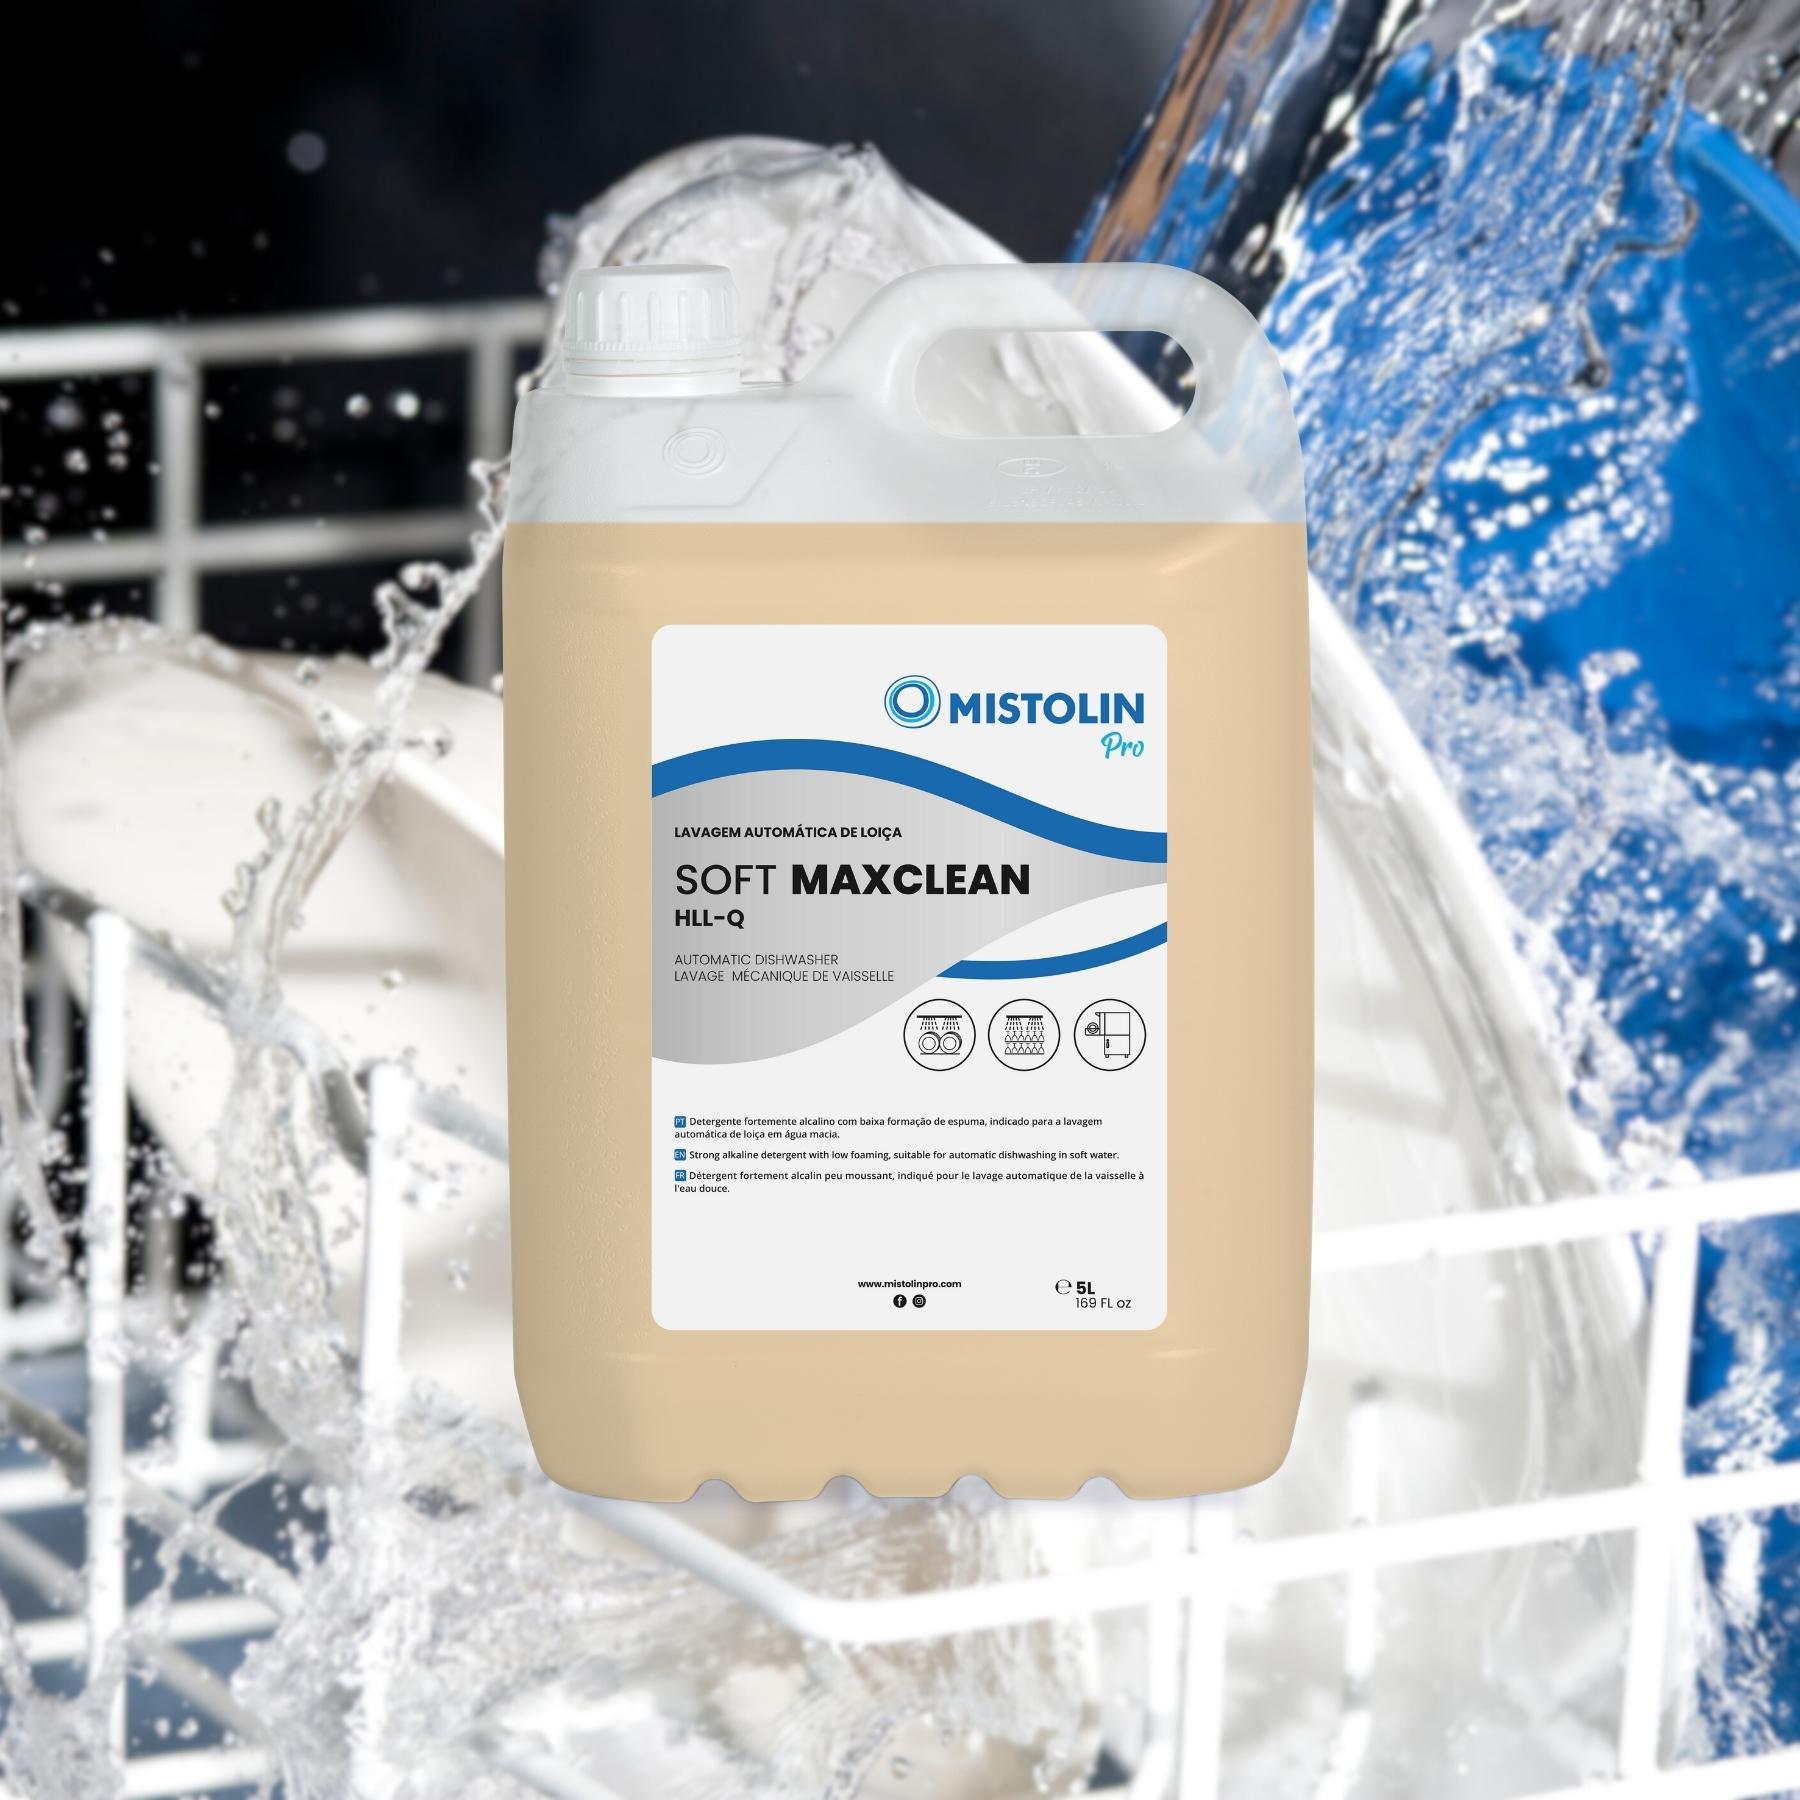 SOFT MAXCLEAN HLL-Q DET.LAV.MECANICA LOIÇA 5LT, é um detergente fortemente alcalino com baixa formação de espuma, indicado para a lavagem automática de louça em água macia. 